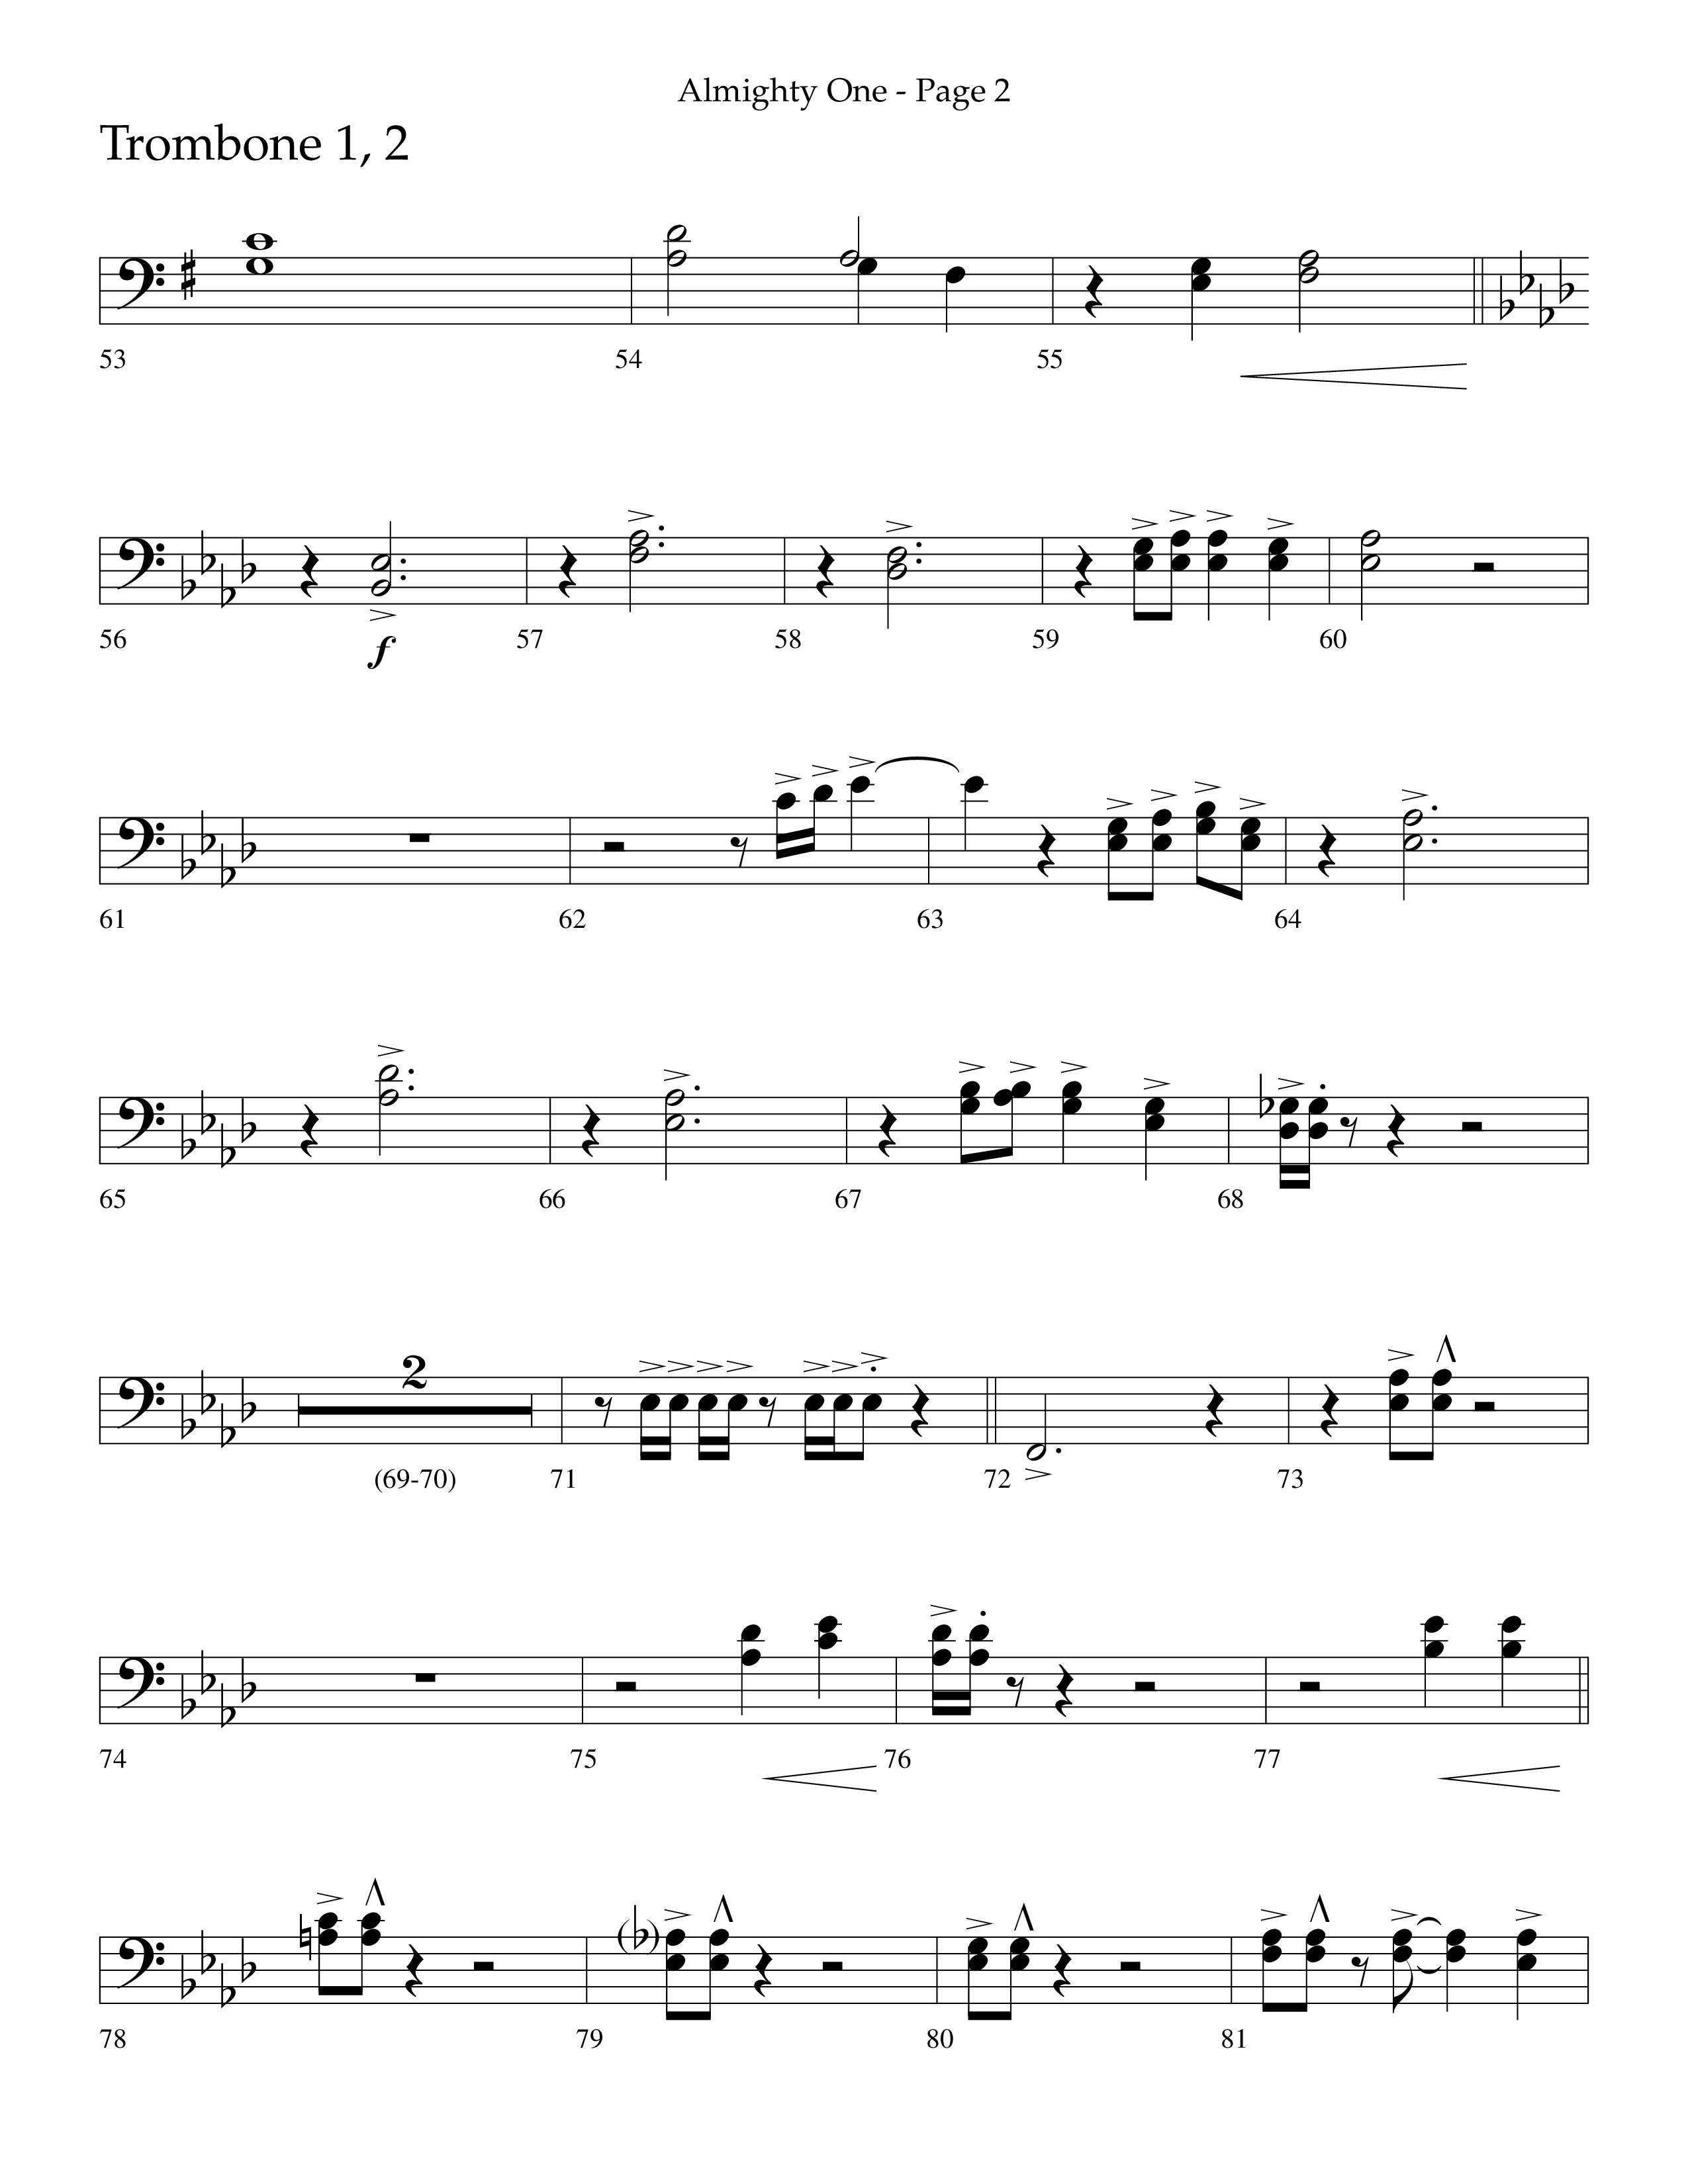 Almighty One (Choral Anthem SATB) Trombone 1/2 (Lifeway Choral / Arr. Bradley Knight)